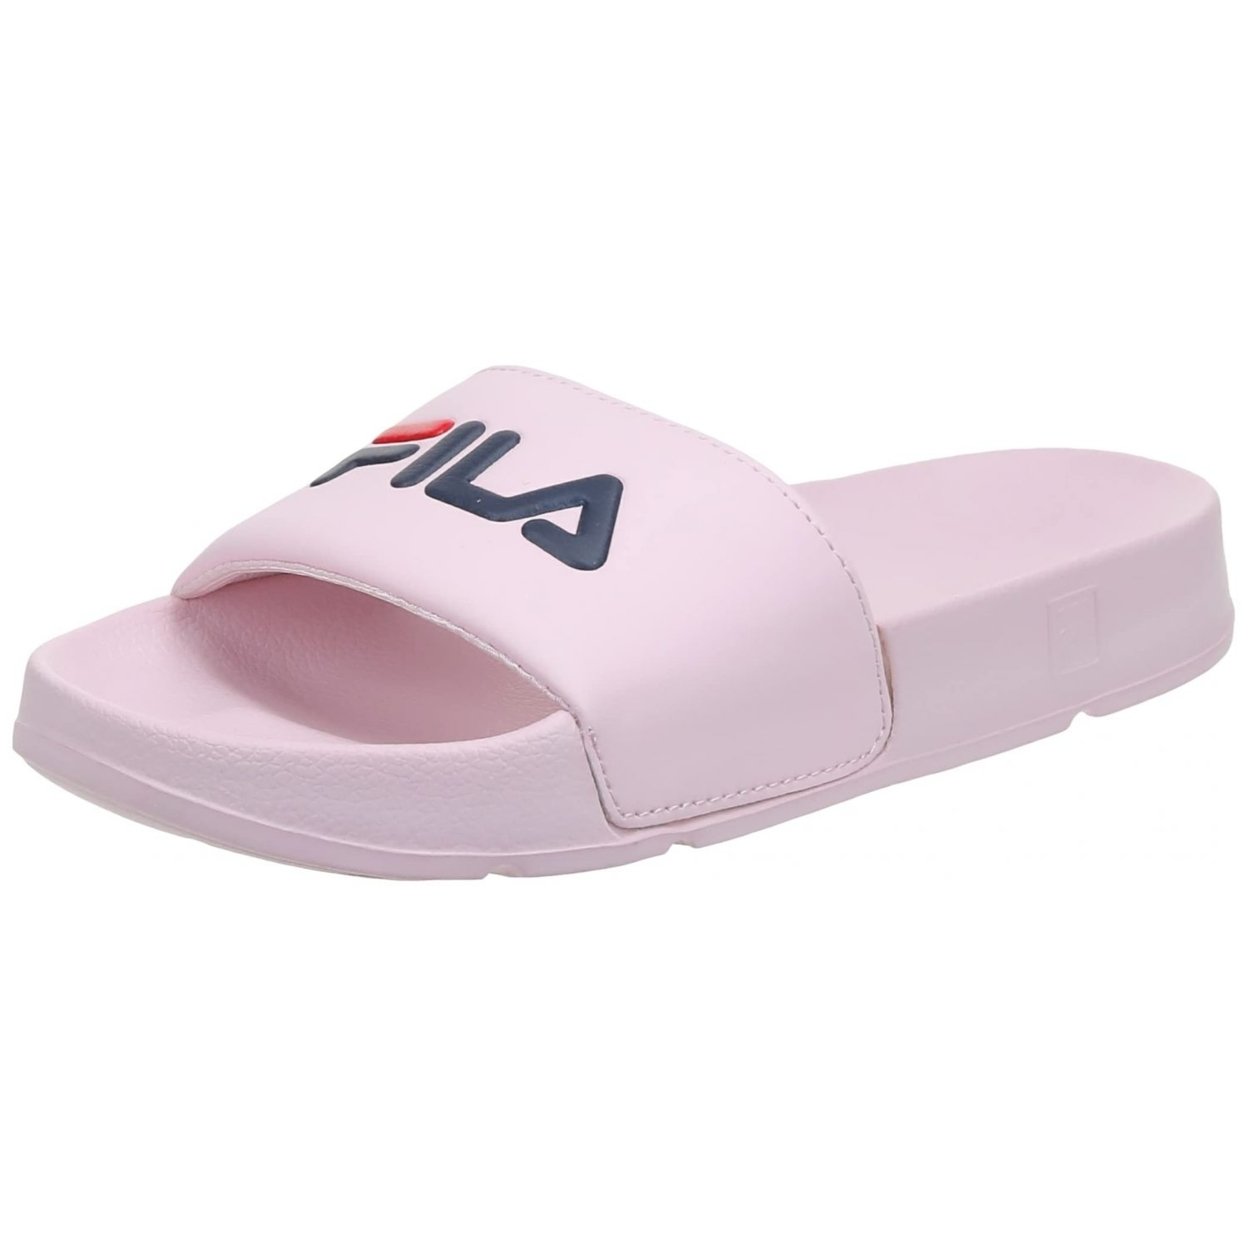 Fila Women's Drifter Slide Sandal 9 D(M) US BBRD/FNVY/FRED - BBRD/FNVY/FRED, 5